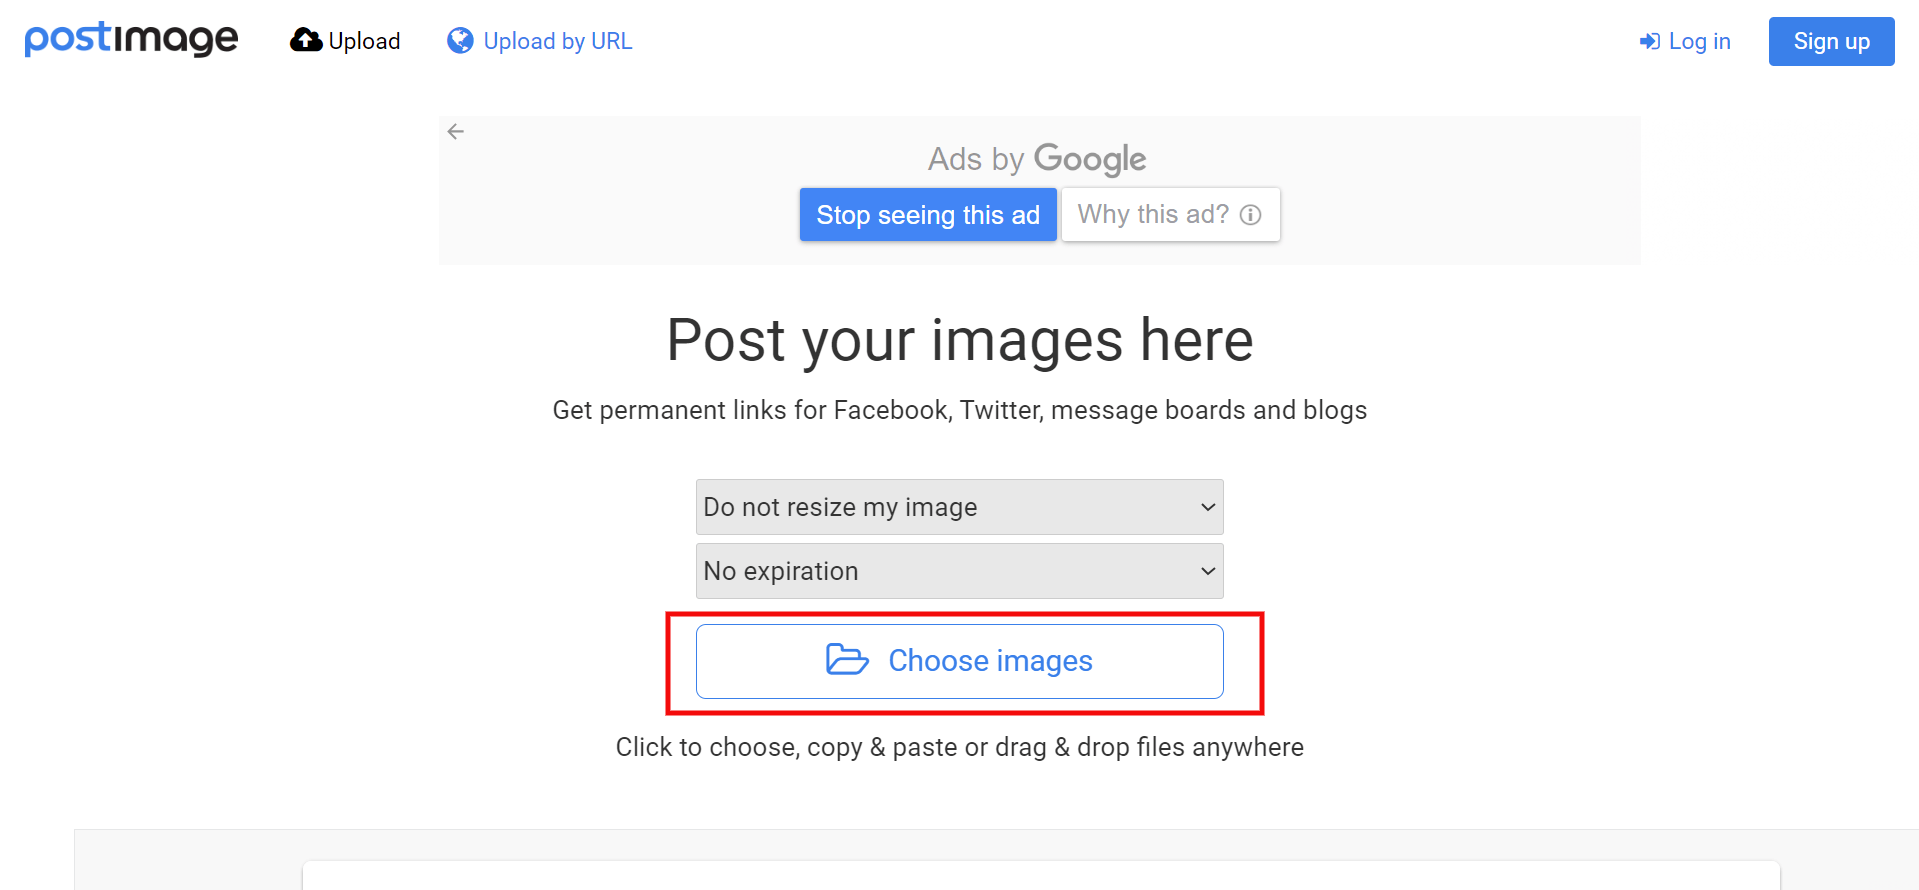 Postimages choose images